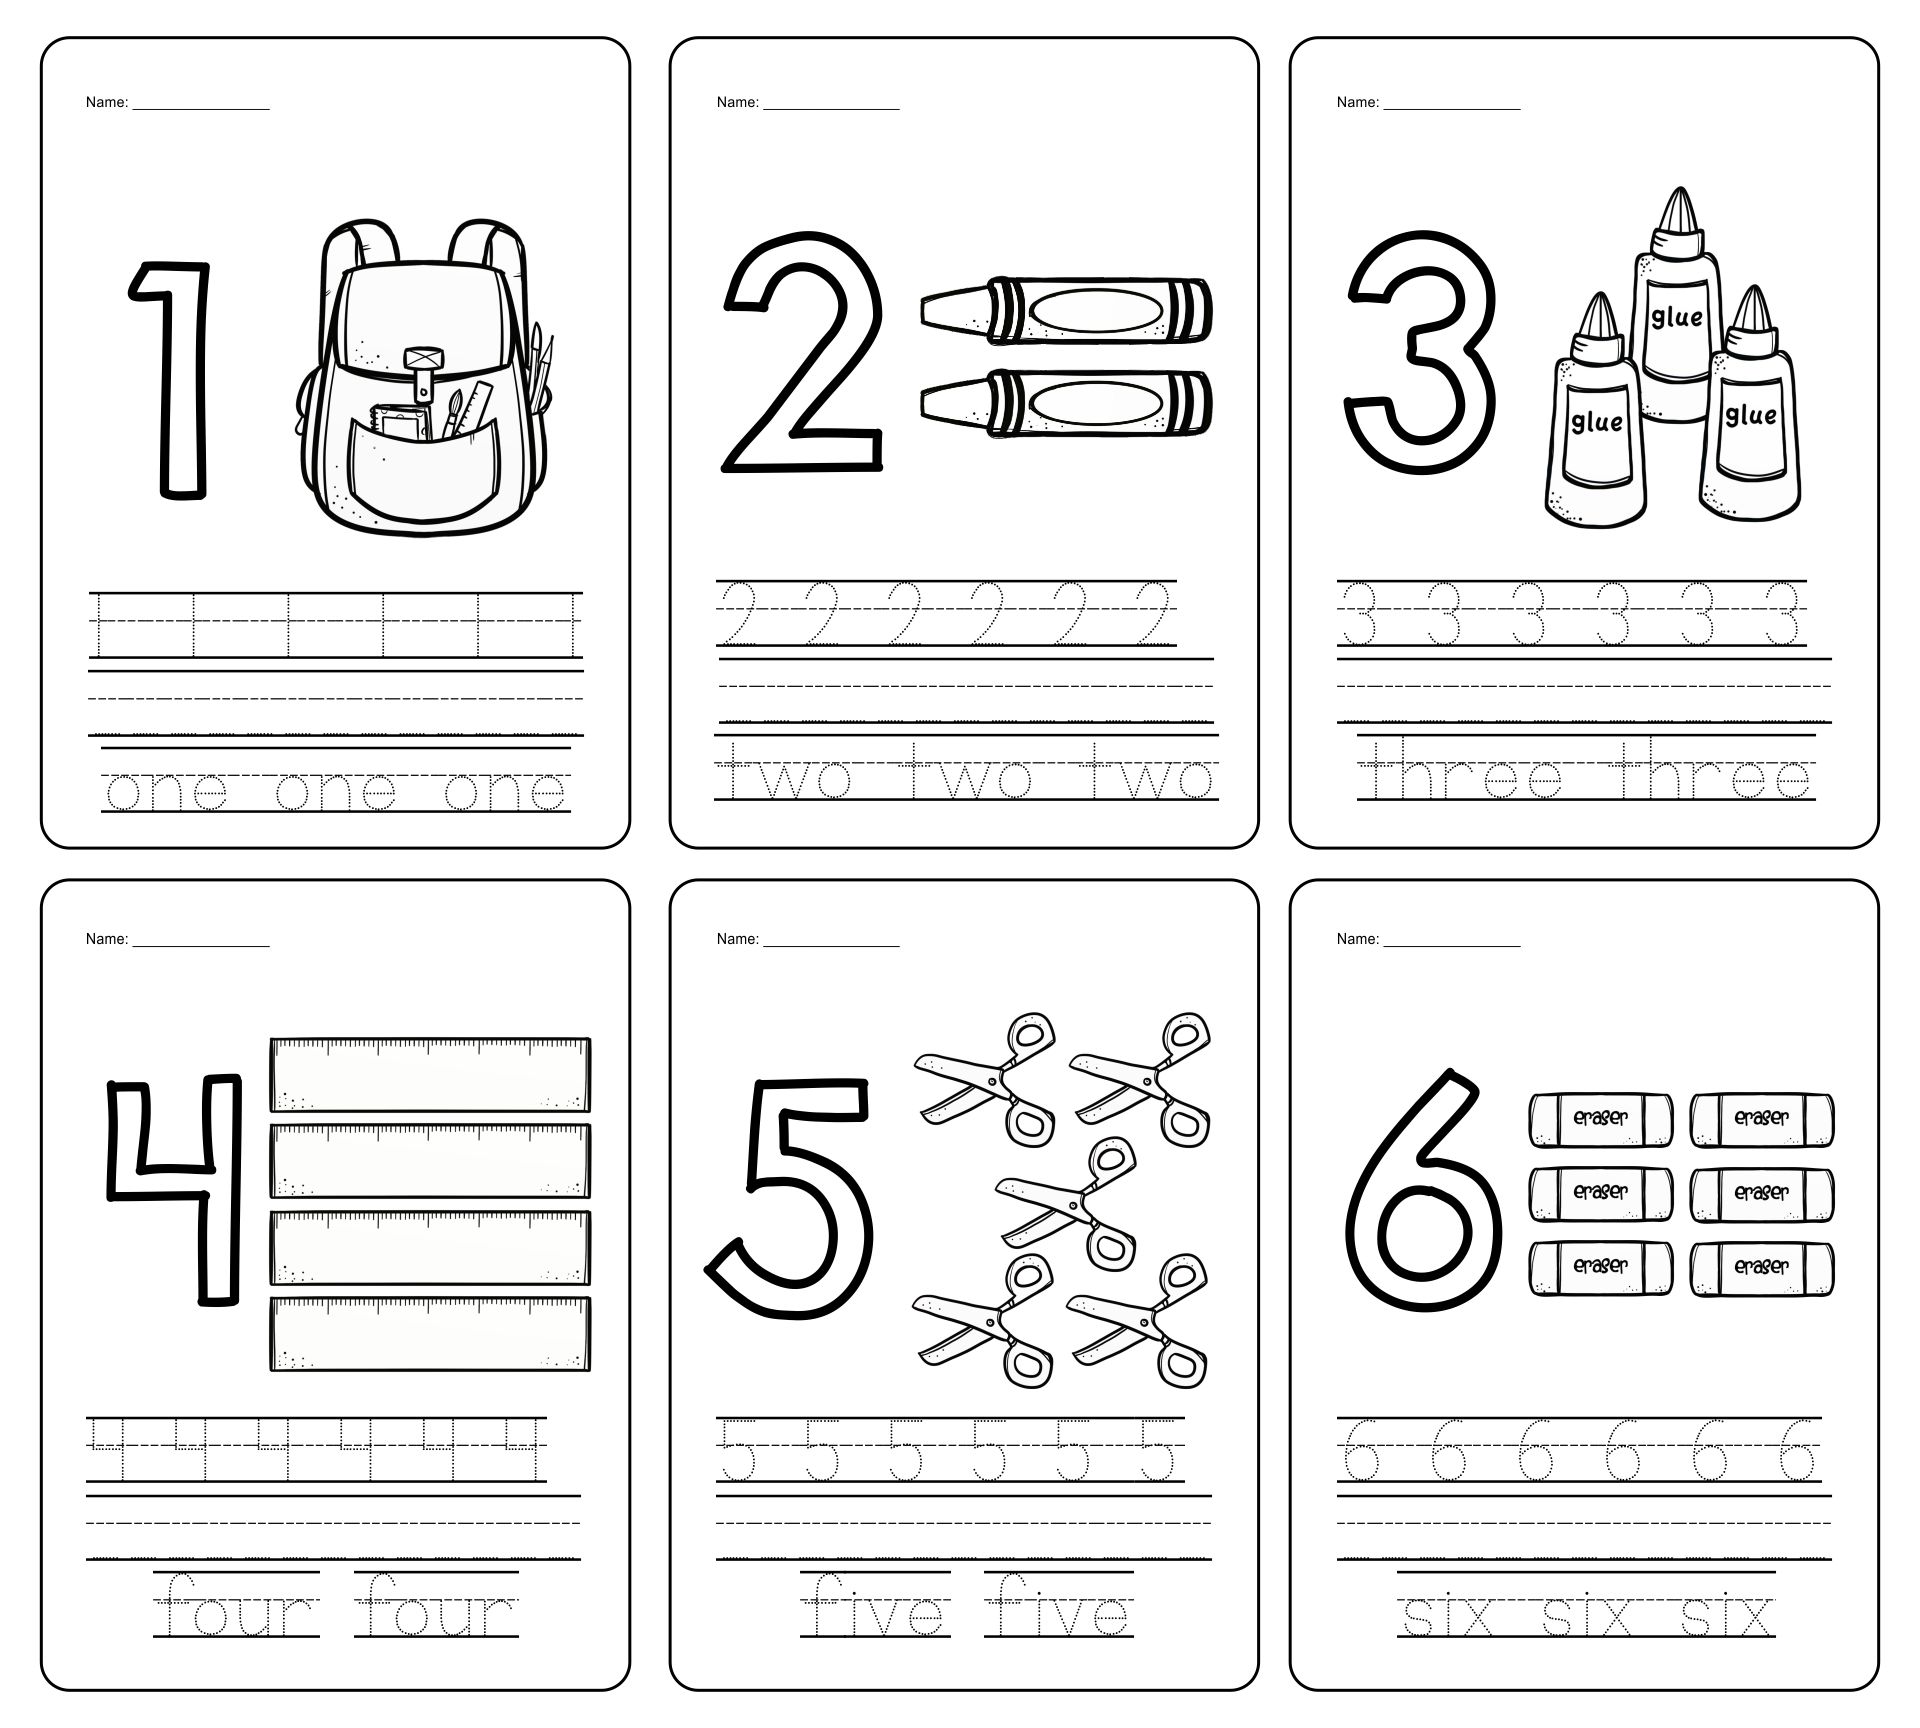 7 Best Images of Printable Number Worksheets - Printable ...